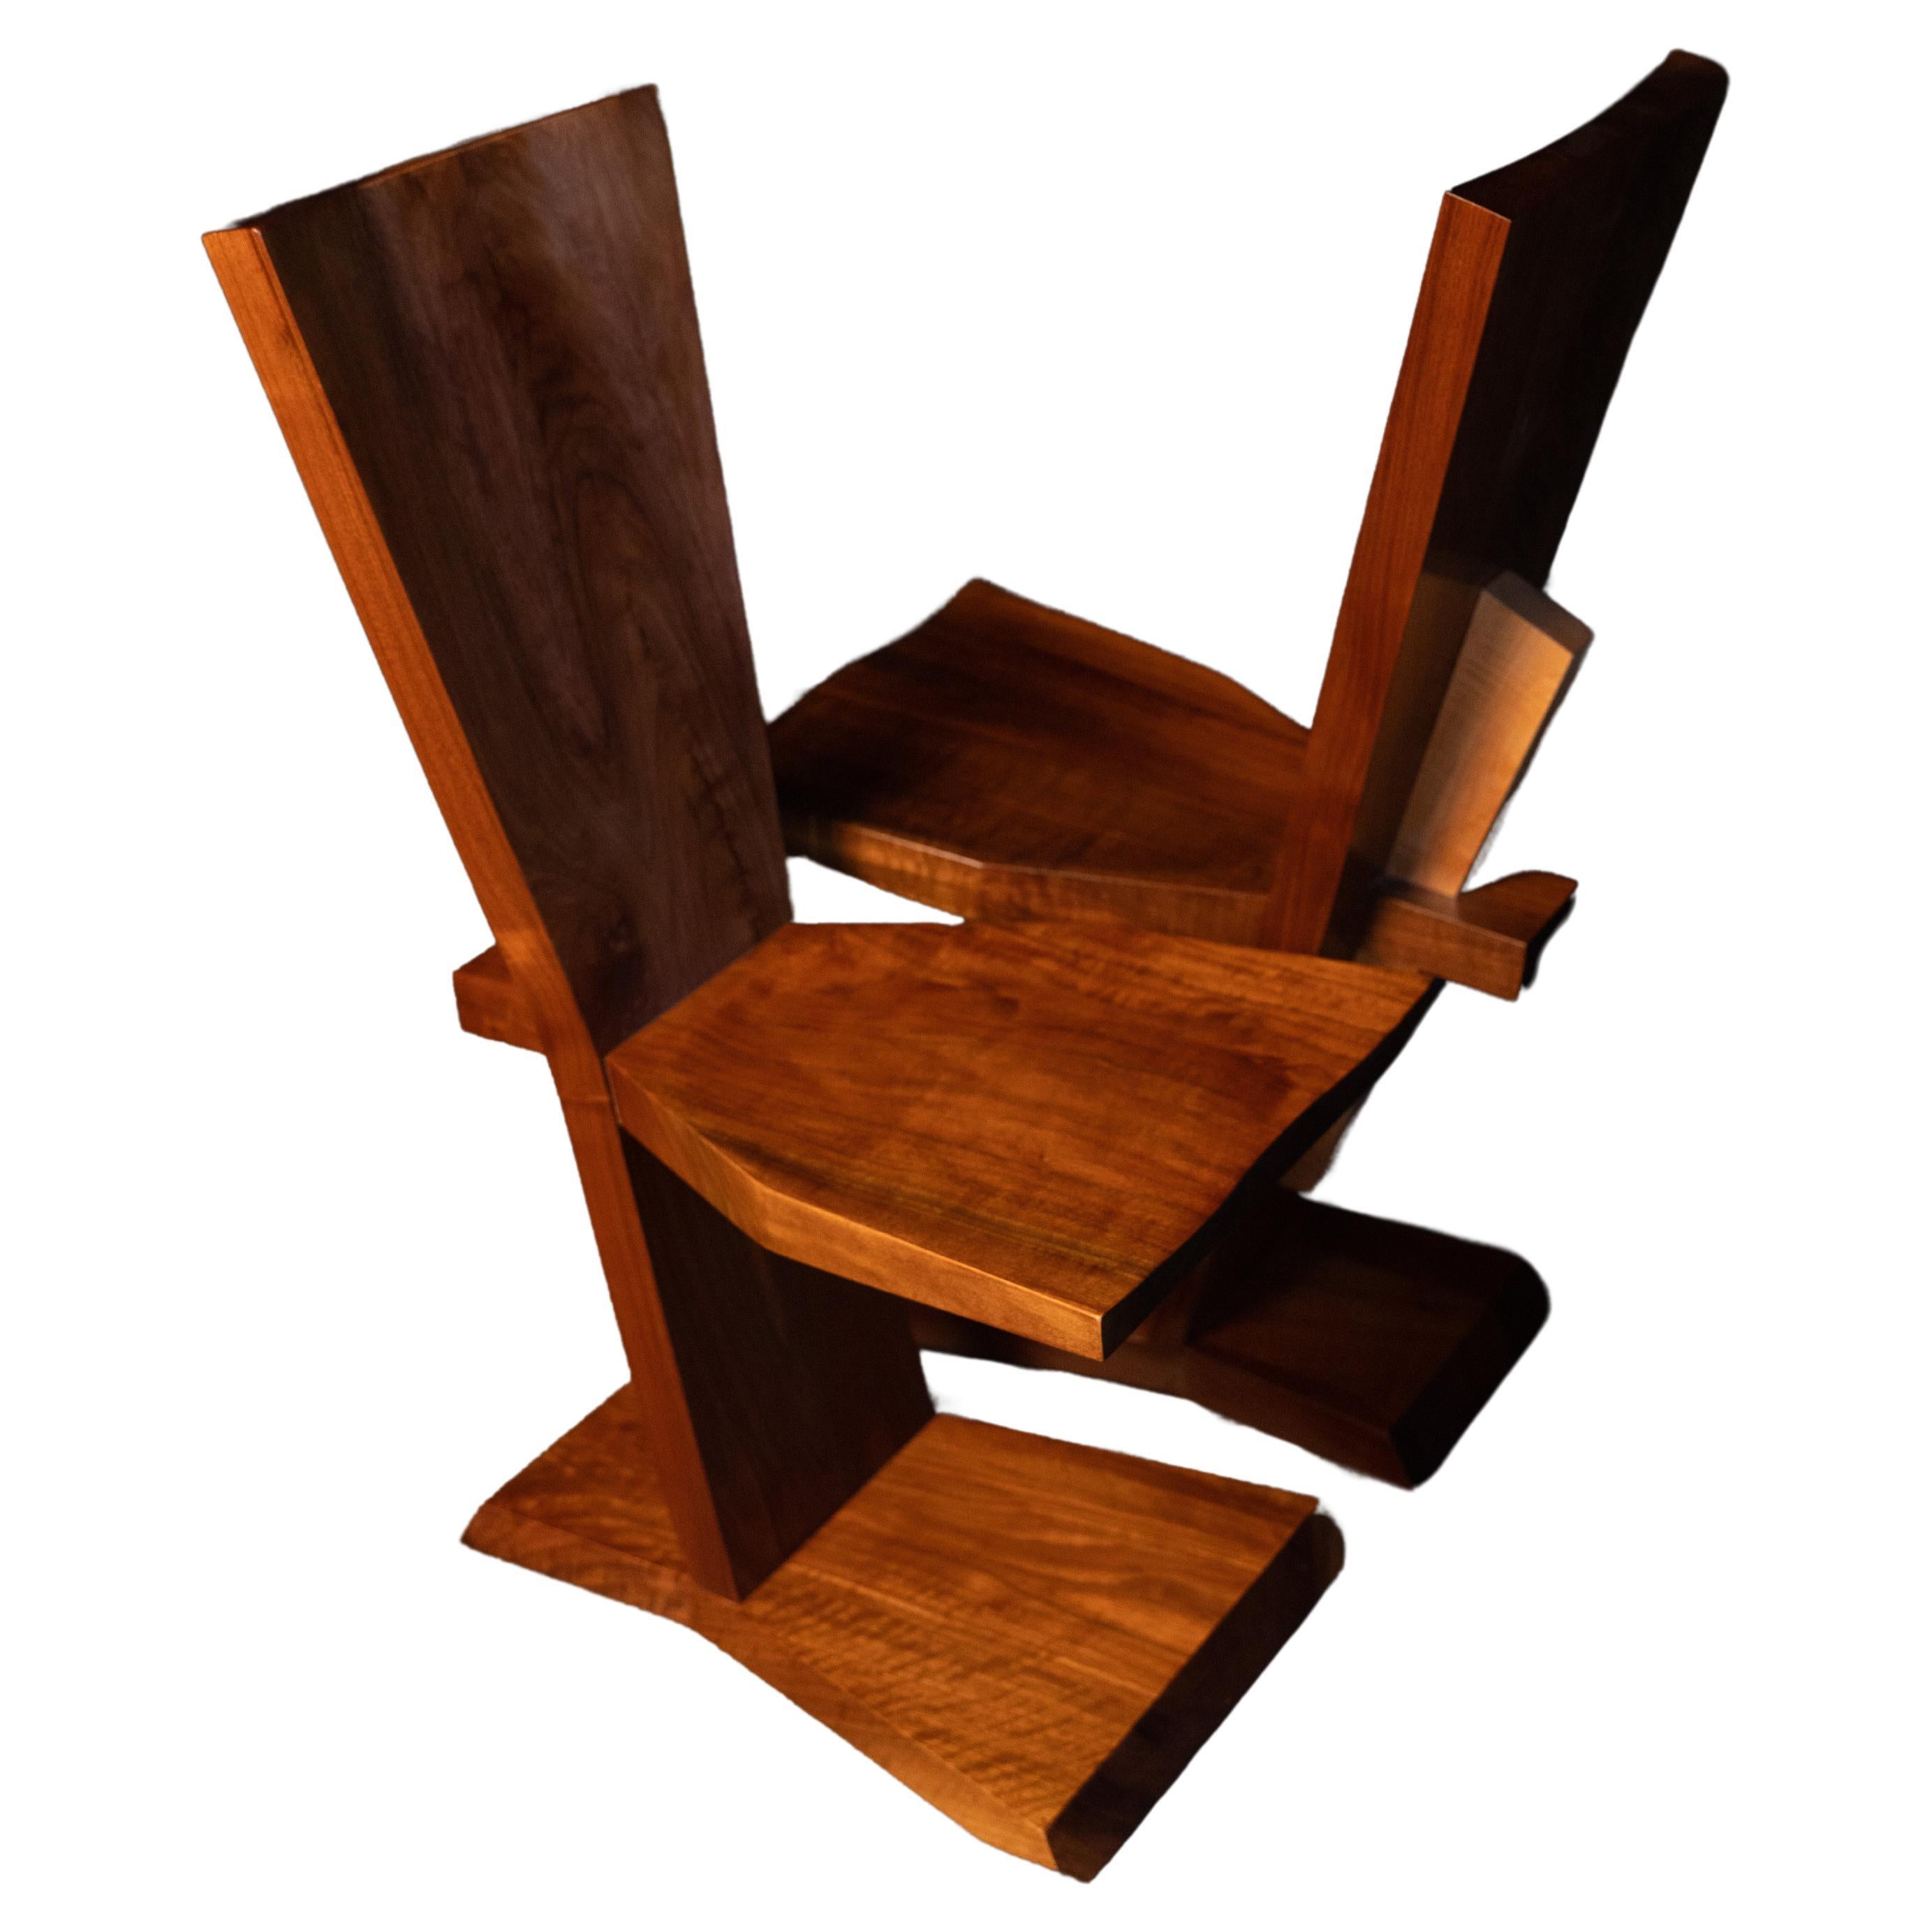 Cette chaise étonnamment confortable et merveilleusement conçue durera pendant des générations. Ces chaises sont fabuleuses groupées autour d'une table de salle à manger à bord vif, mais elles sont tout aussi parfaites seules. Ces deux chaises